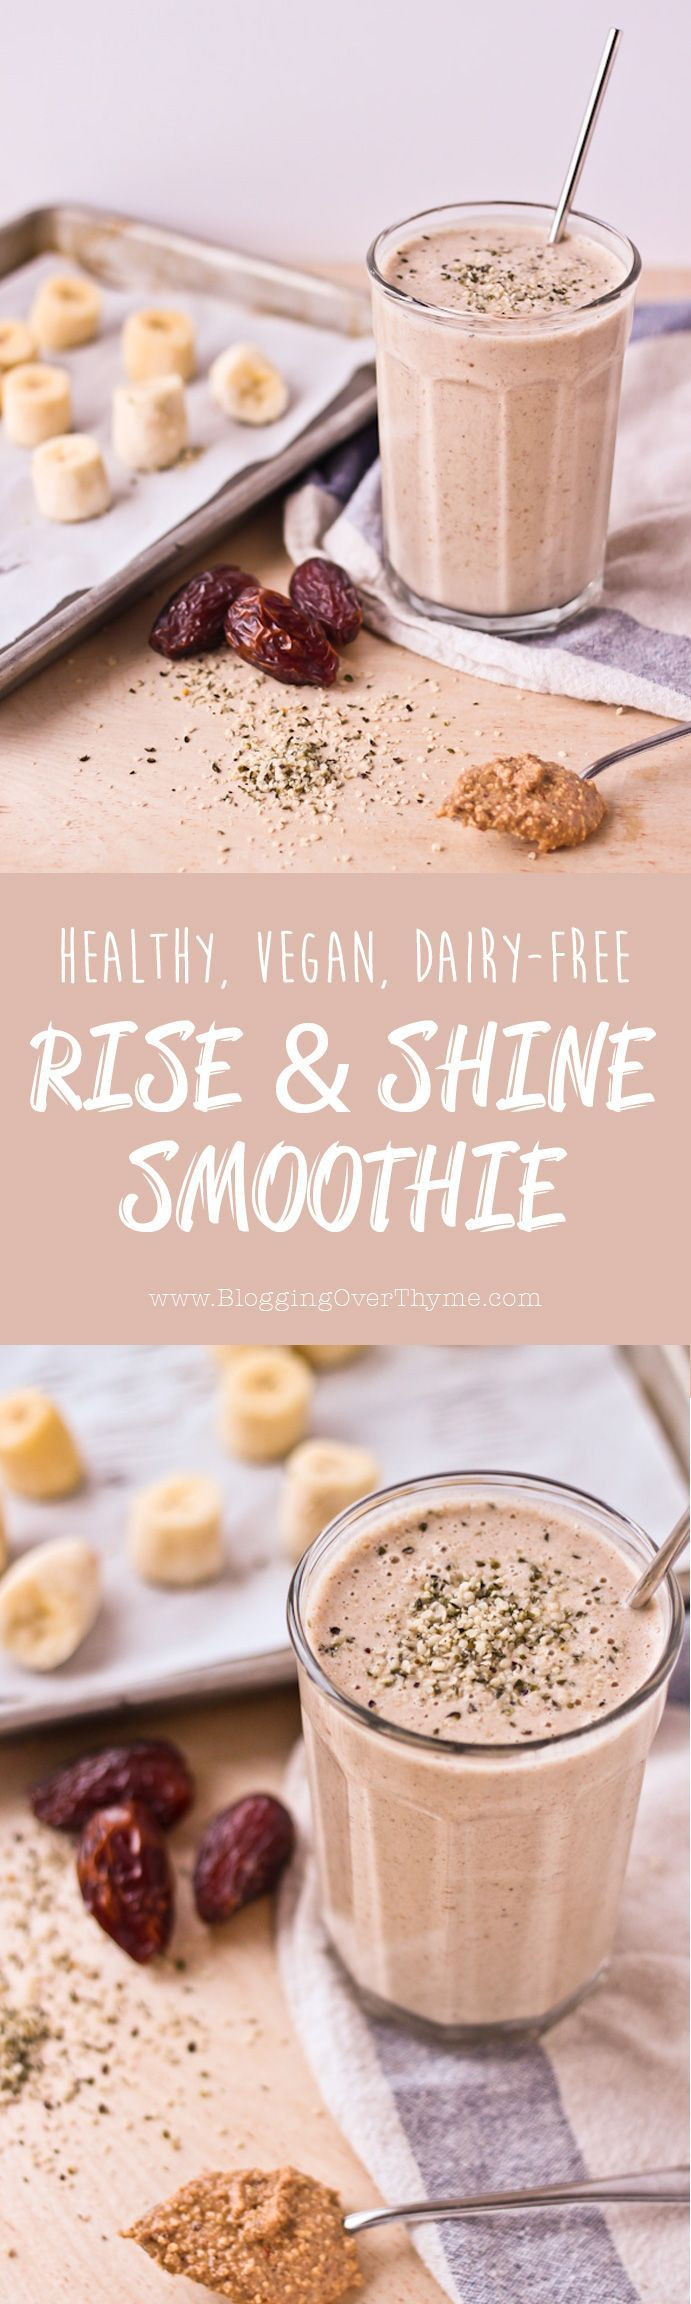 Healthy Vegan Breakfast Smoothies
 Best 25 Vegan smoothies ideas on Pinterest